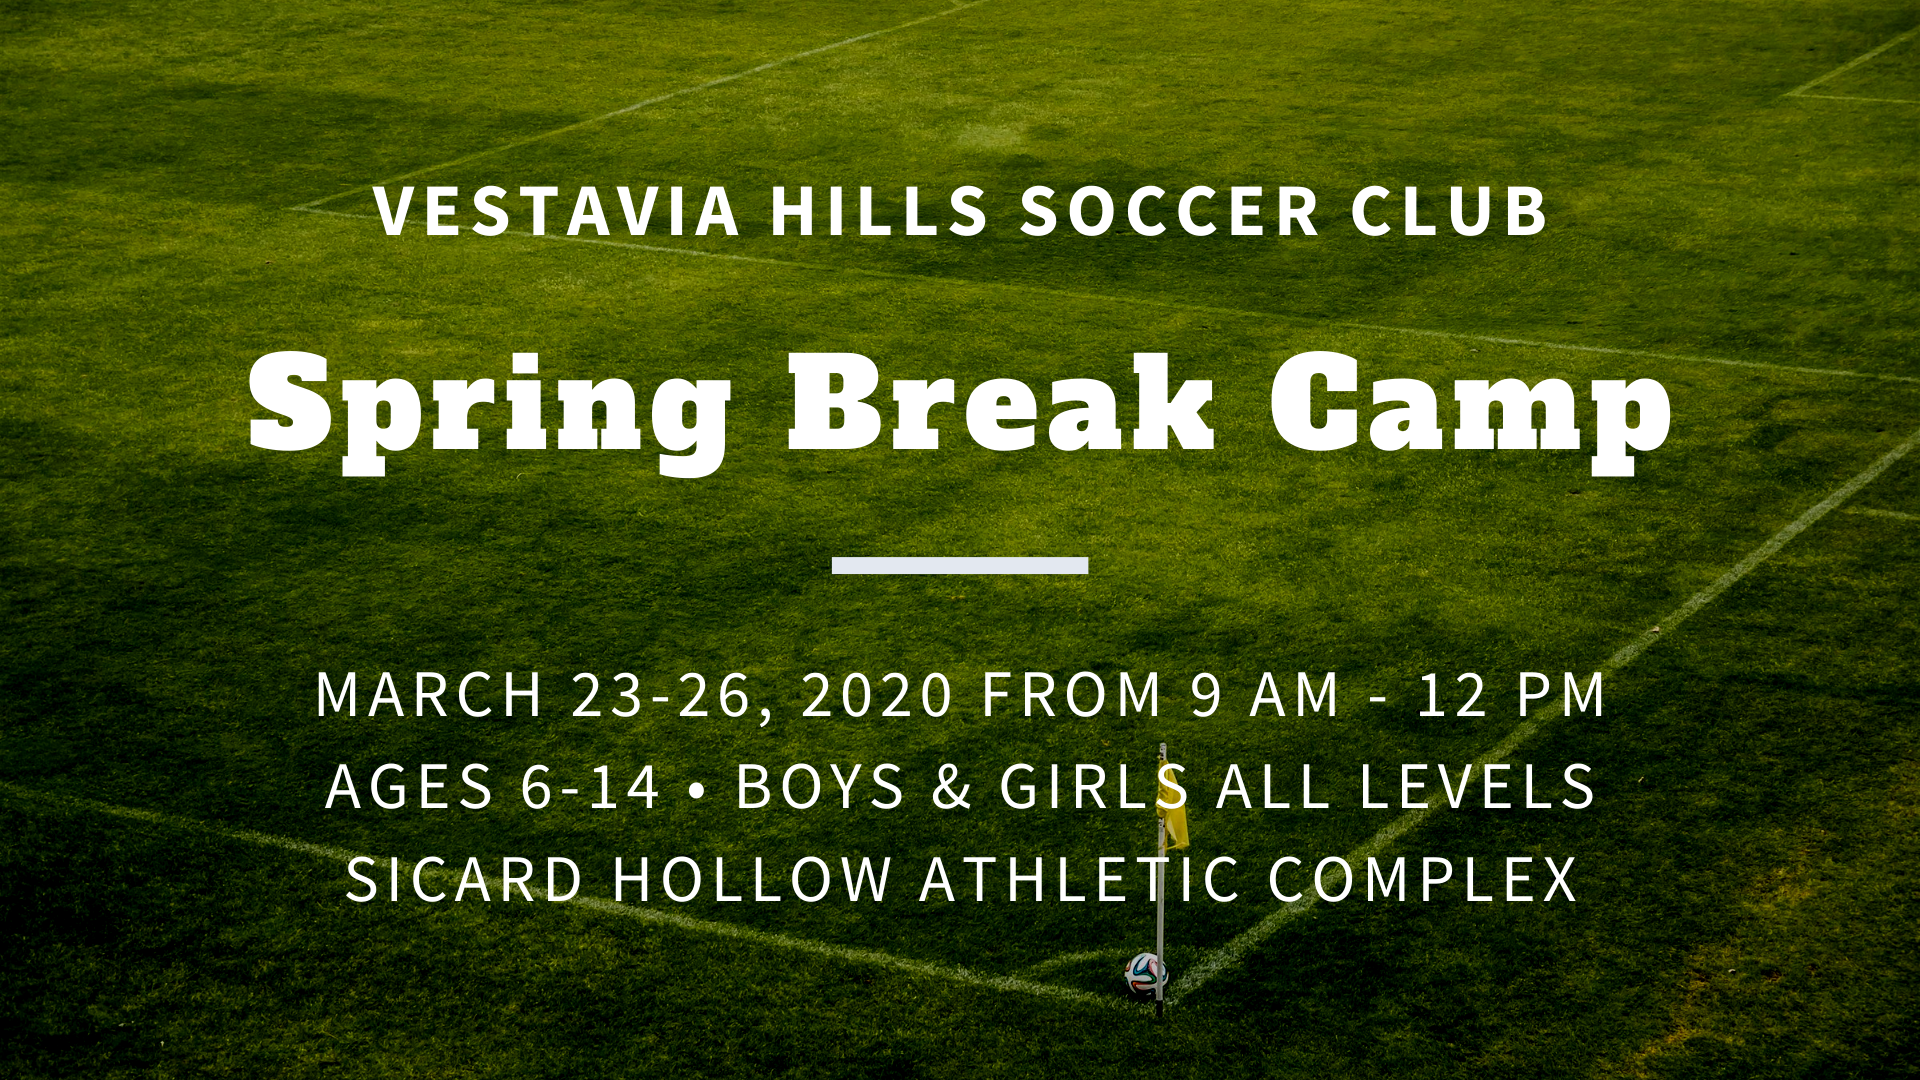 Spring Break Camp is March 23-26, 2020! [CANCELED] – Vestavia Hills